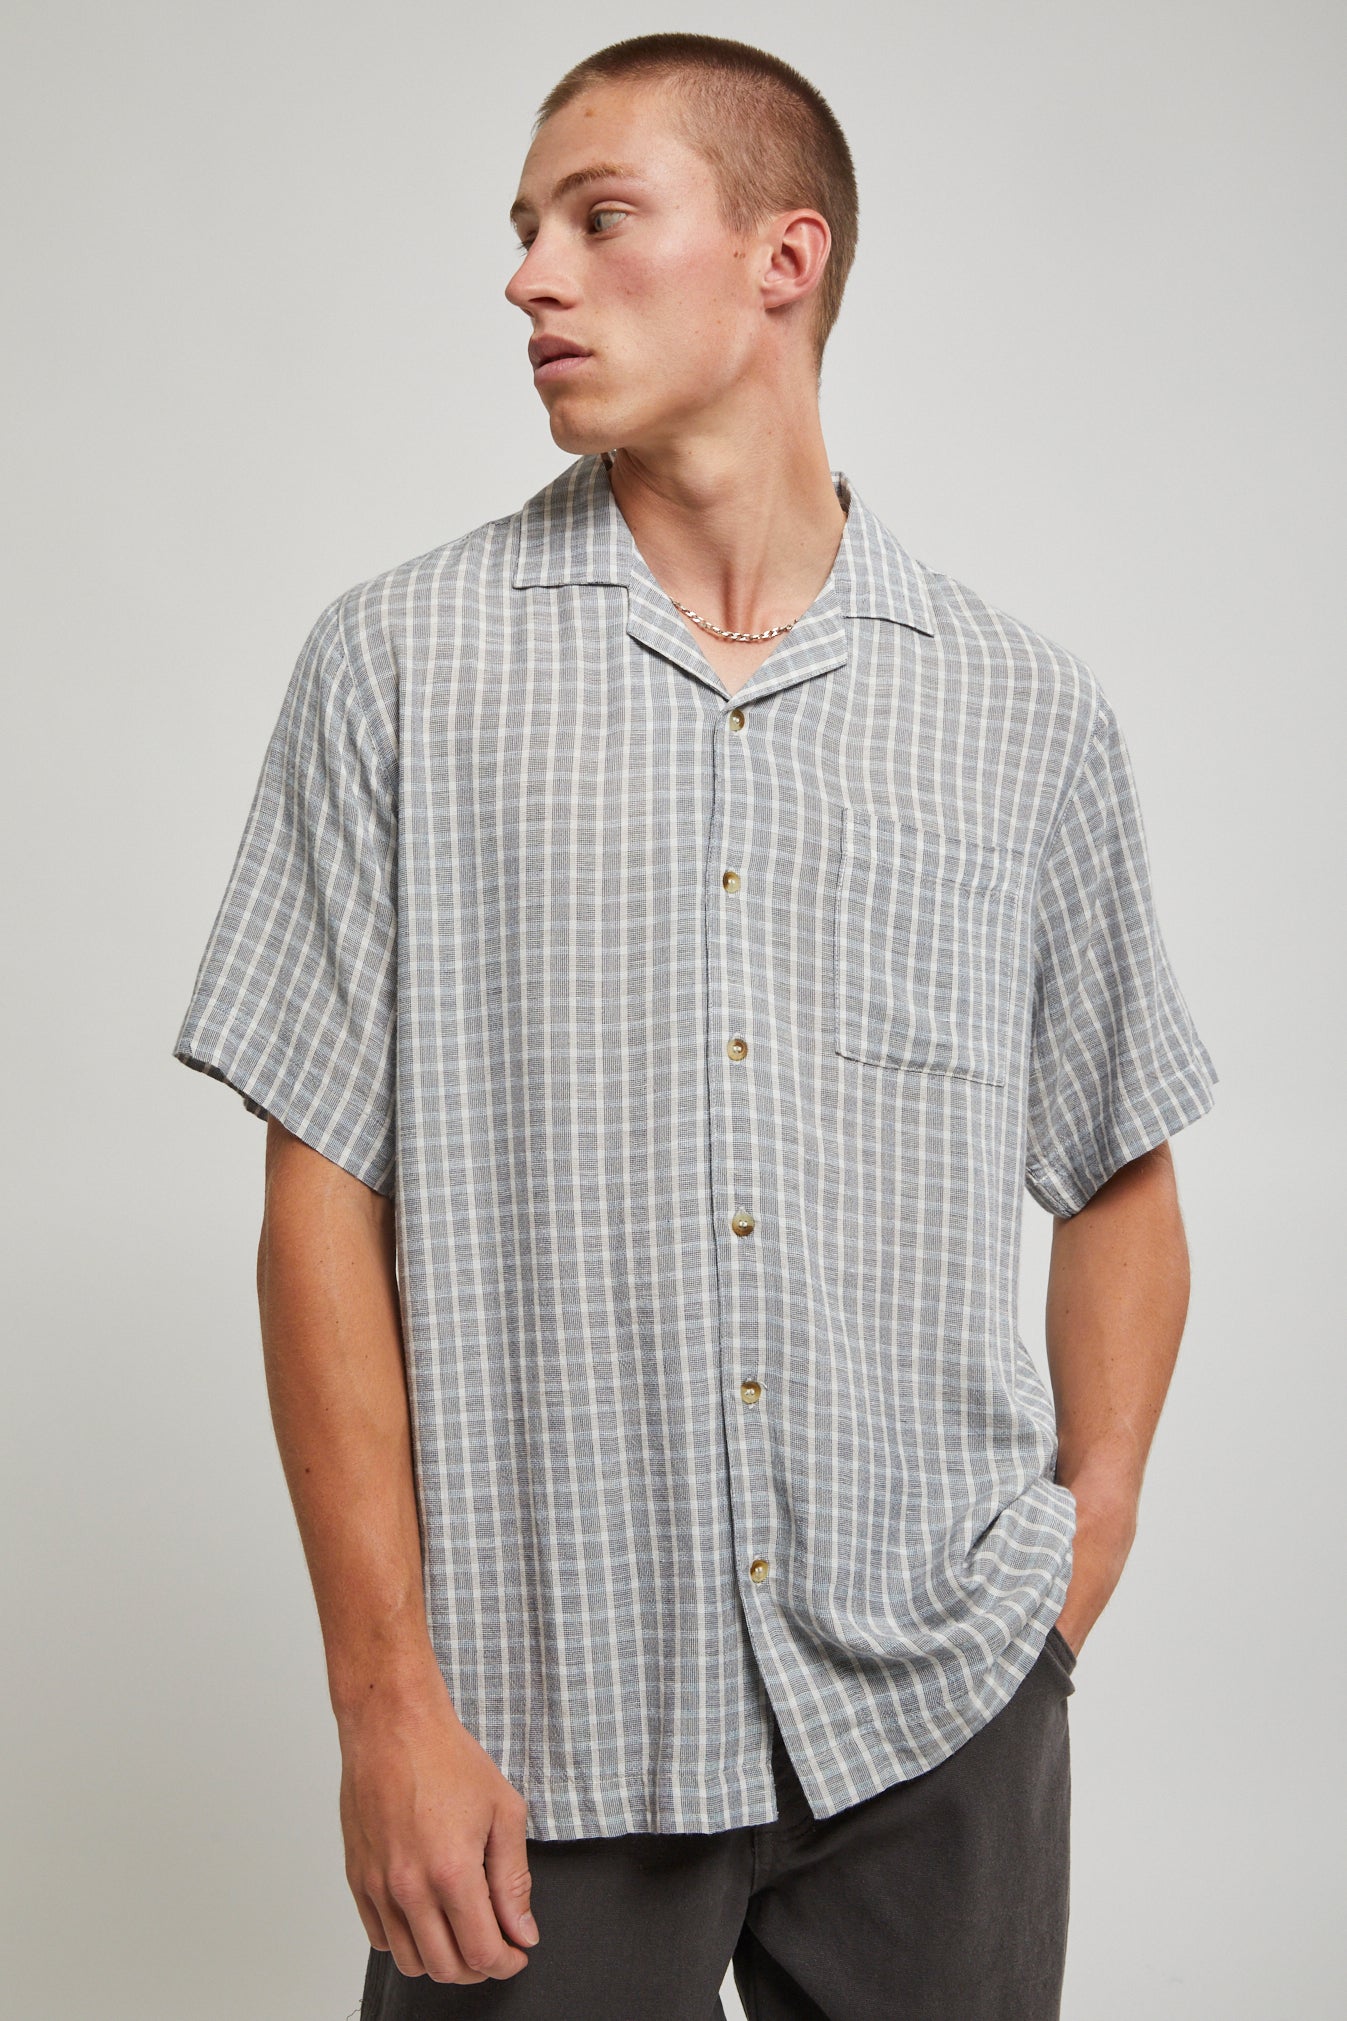 Bowler Shirt | North Beach